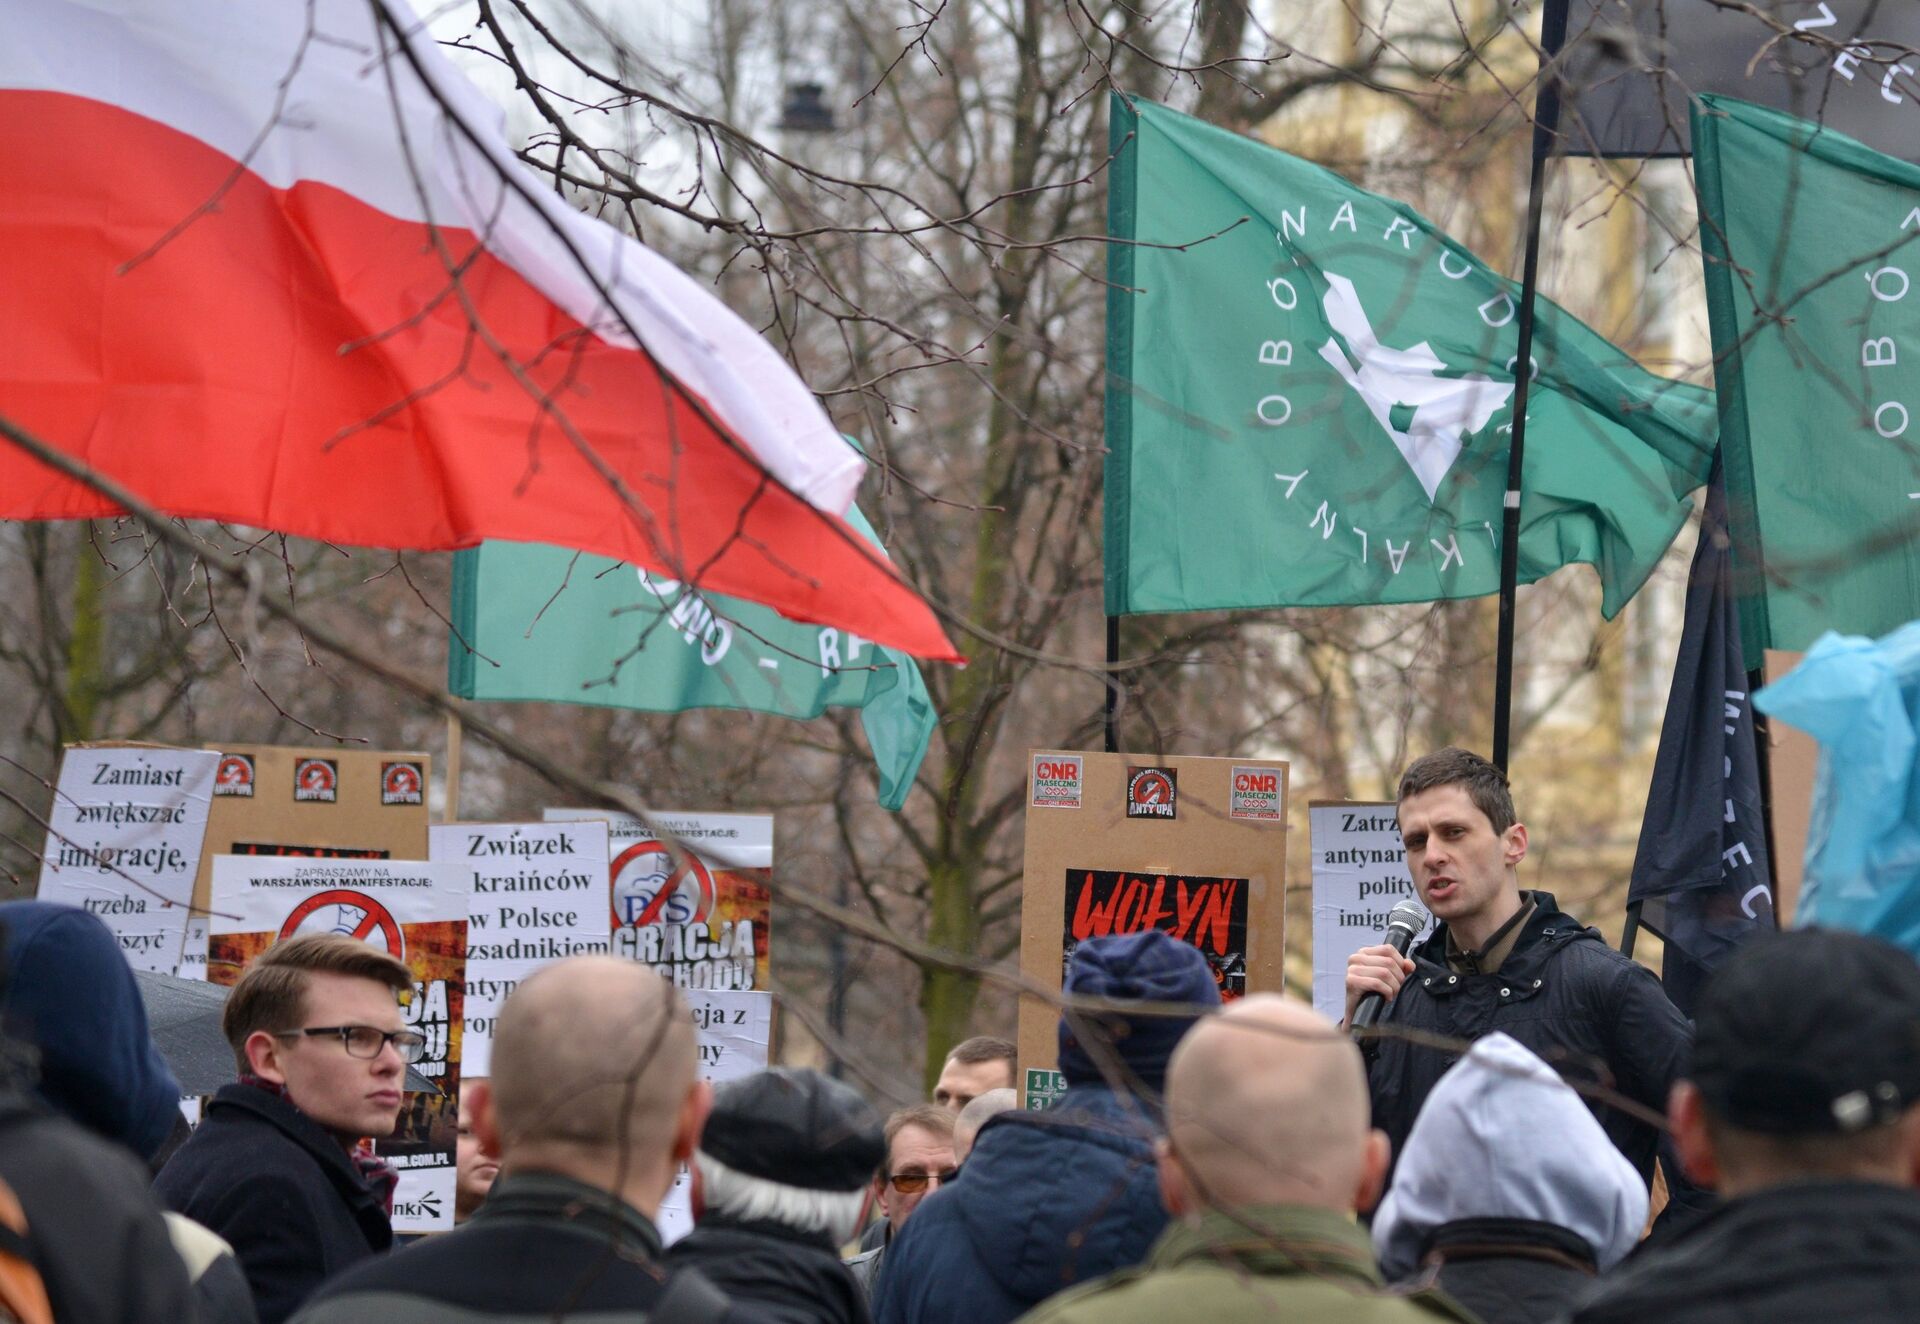 Участники митинга против возросшего числа украинских мигрантов в Варшаве. 18 марта 2017 года - ИноСМИ, 1920, 03.01.2021